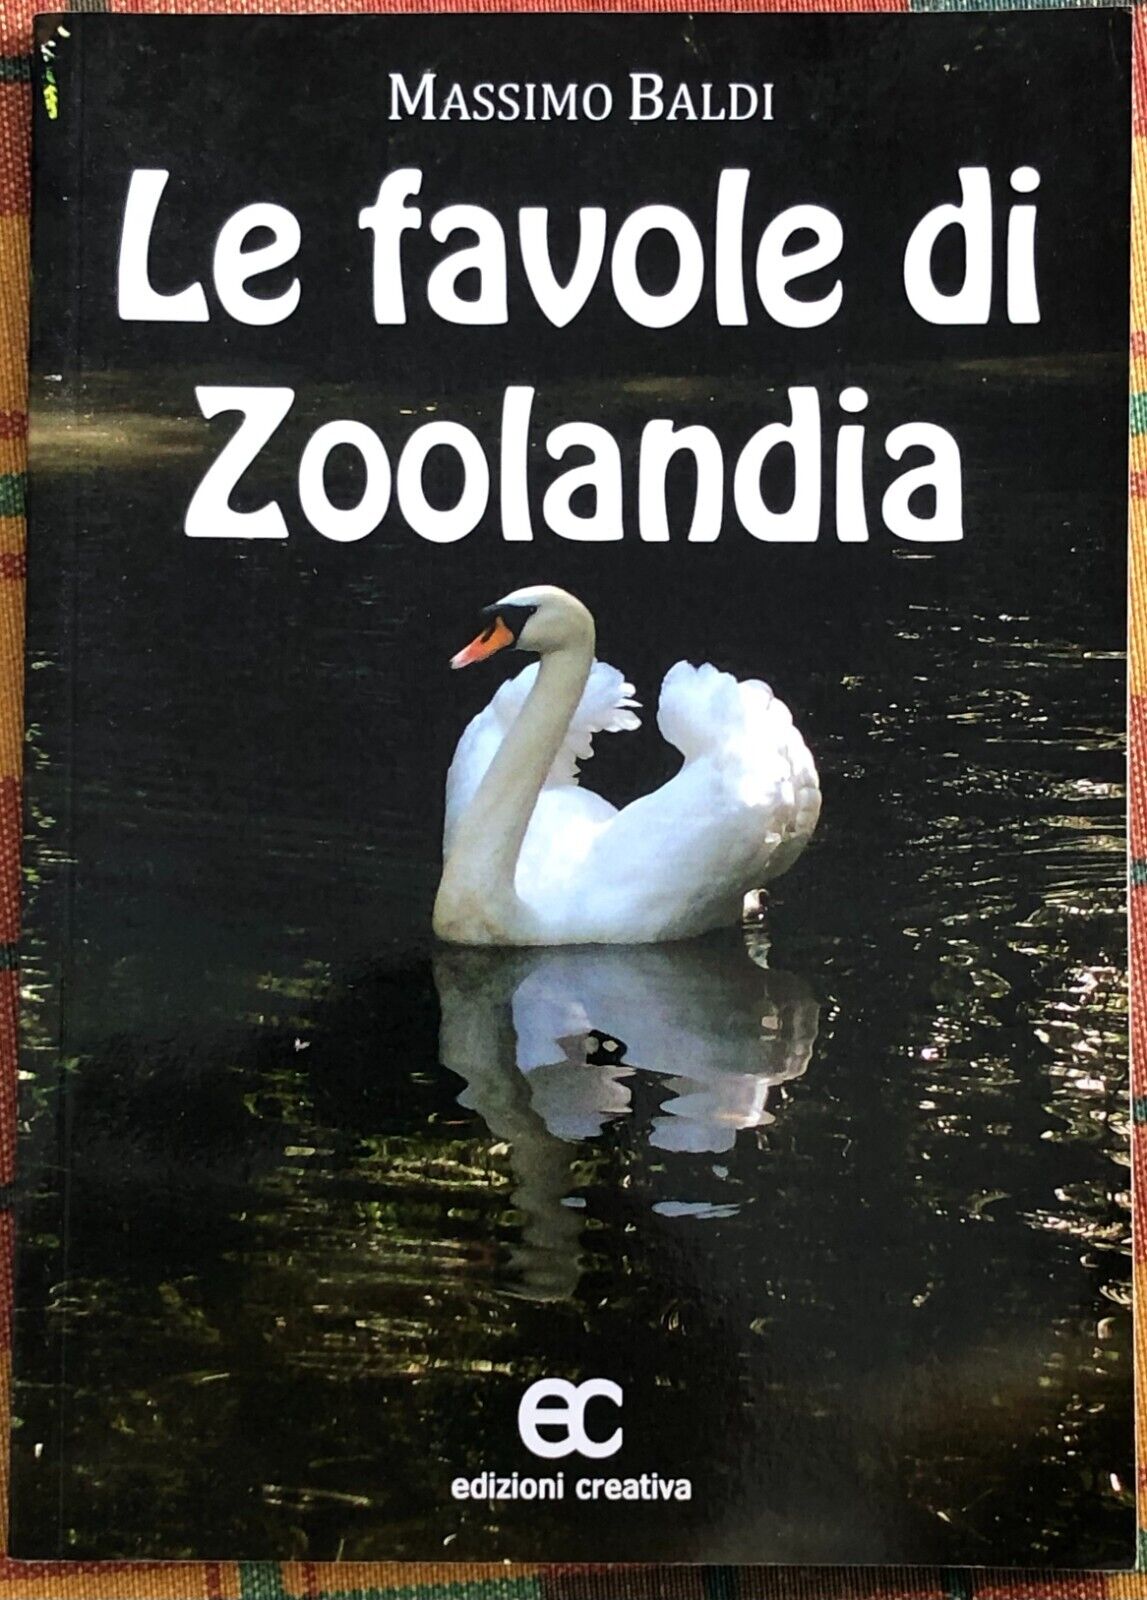 Le favole di Zoolandia di Massimo Baldi, 2011, Edizioni Creativa